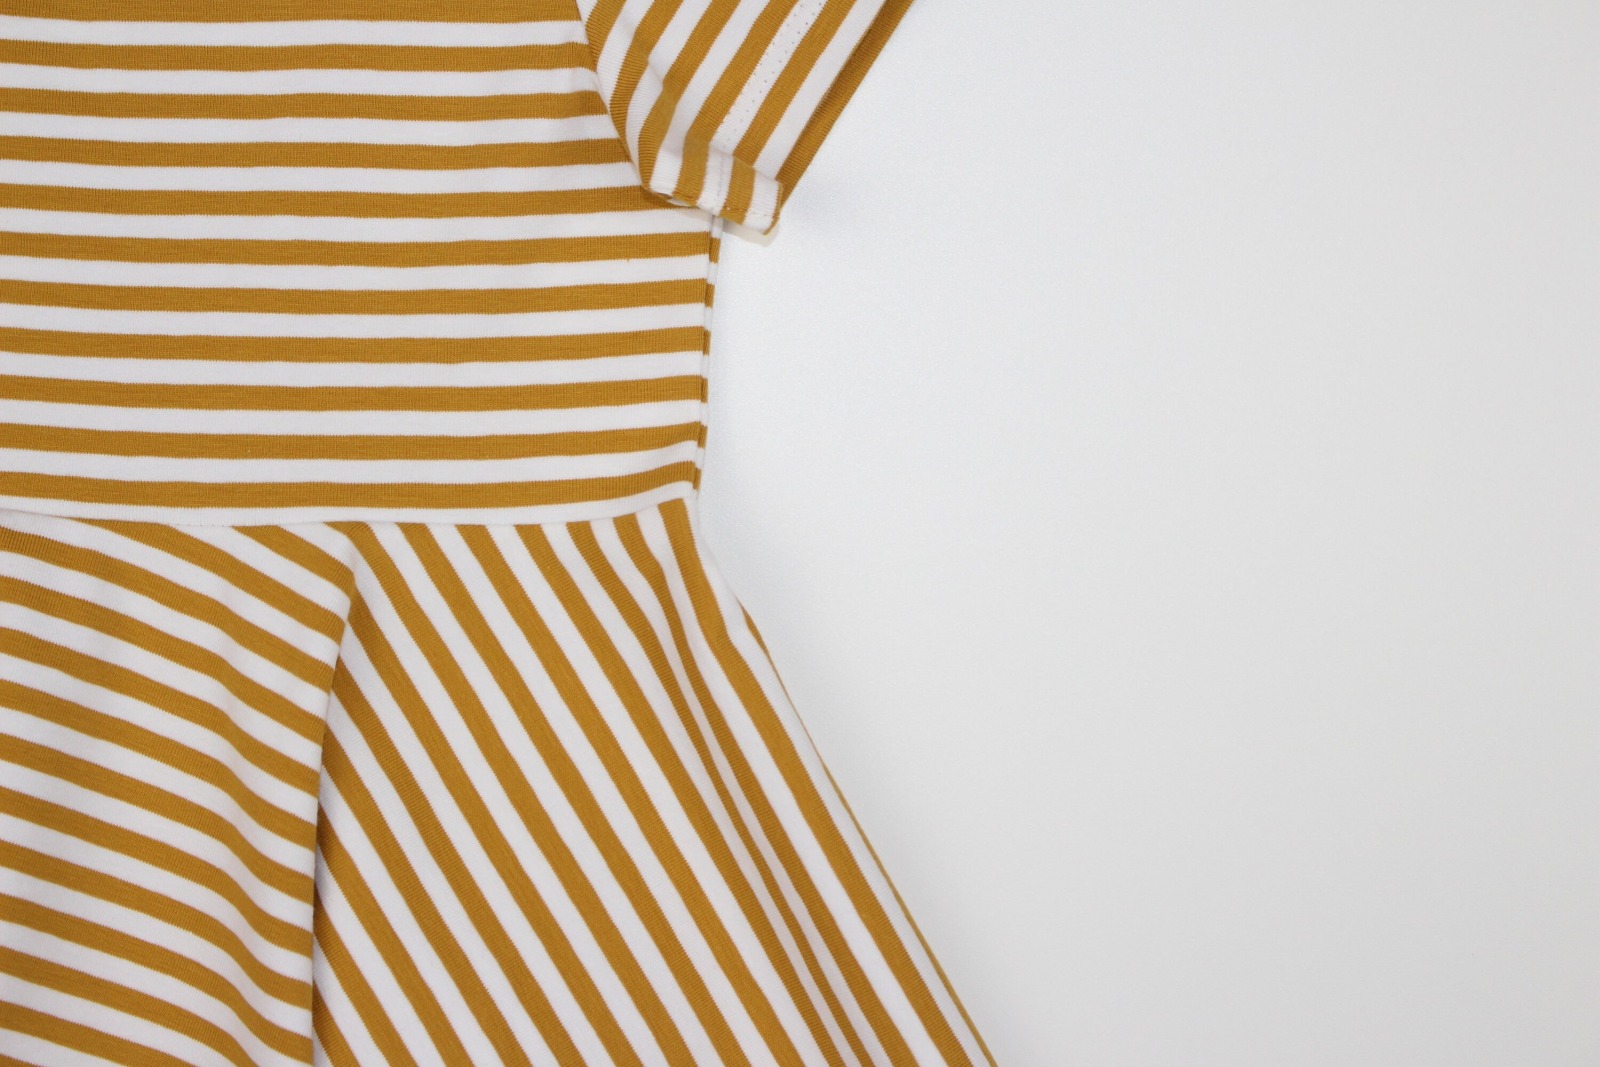 Drehkleid Dalasjö, sommerliches Kleid mit kurzen Ärmeln, Kleid mit ganzem Tellerrock, smalandkids